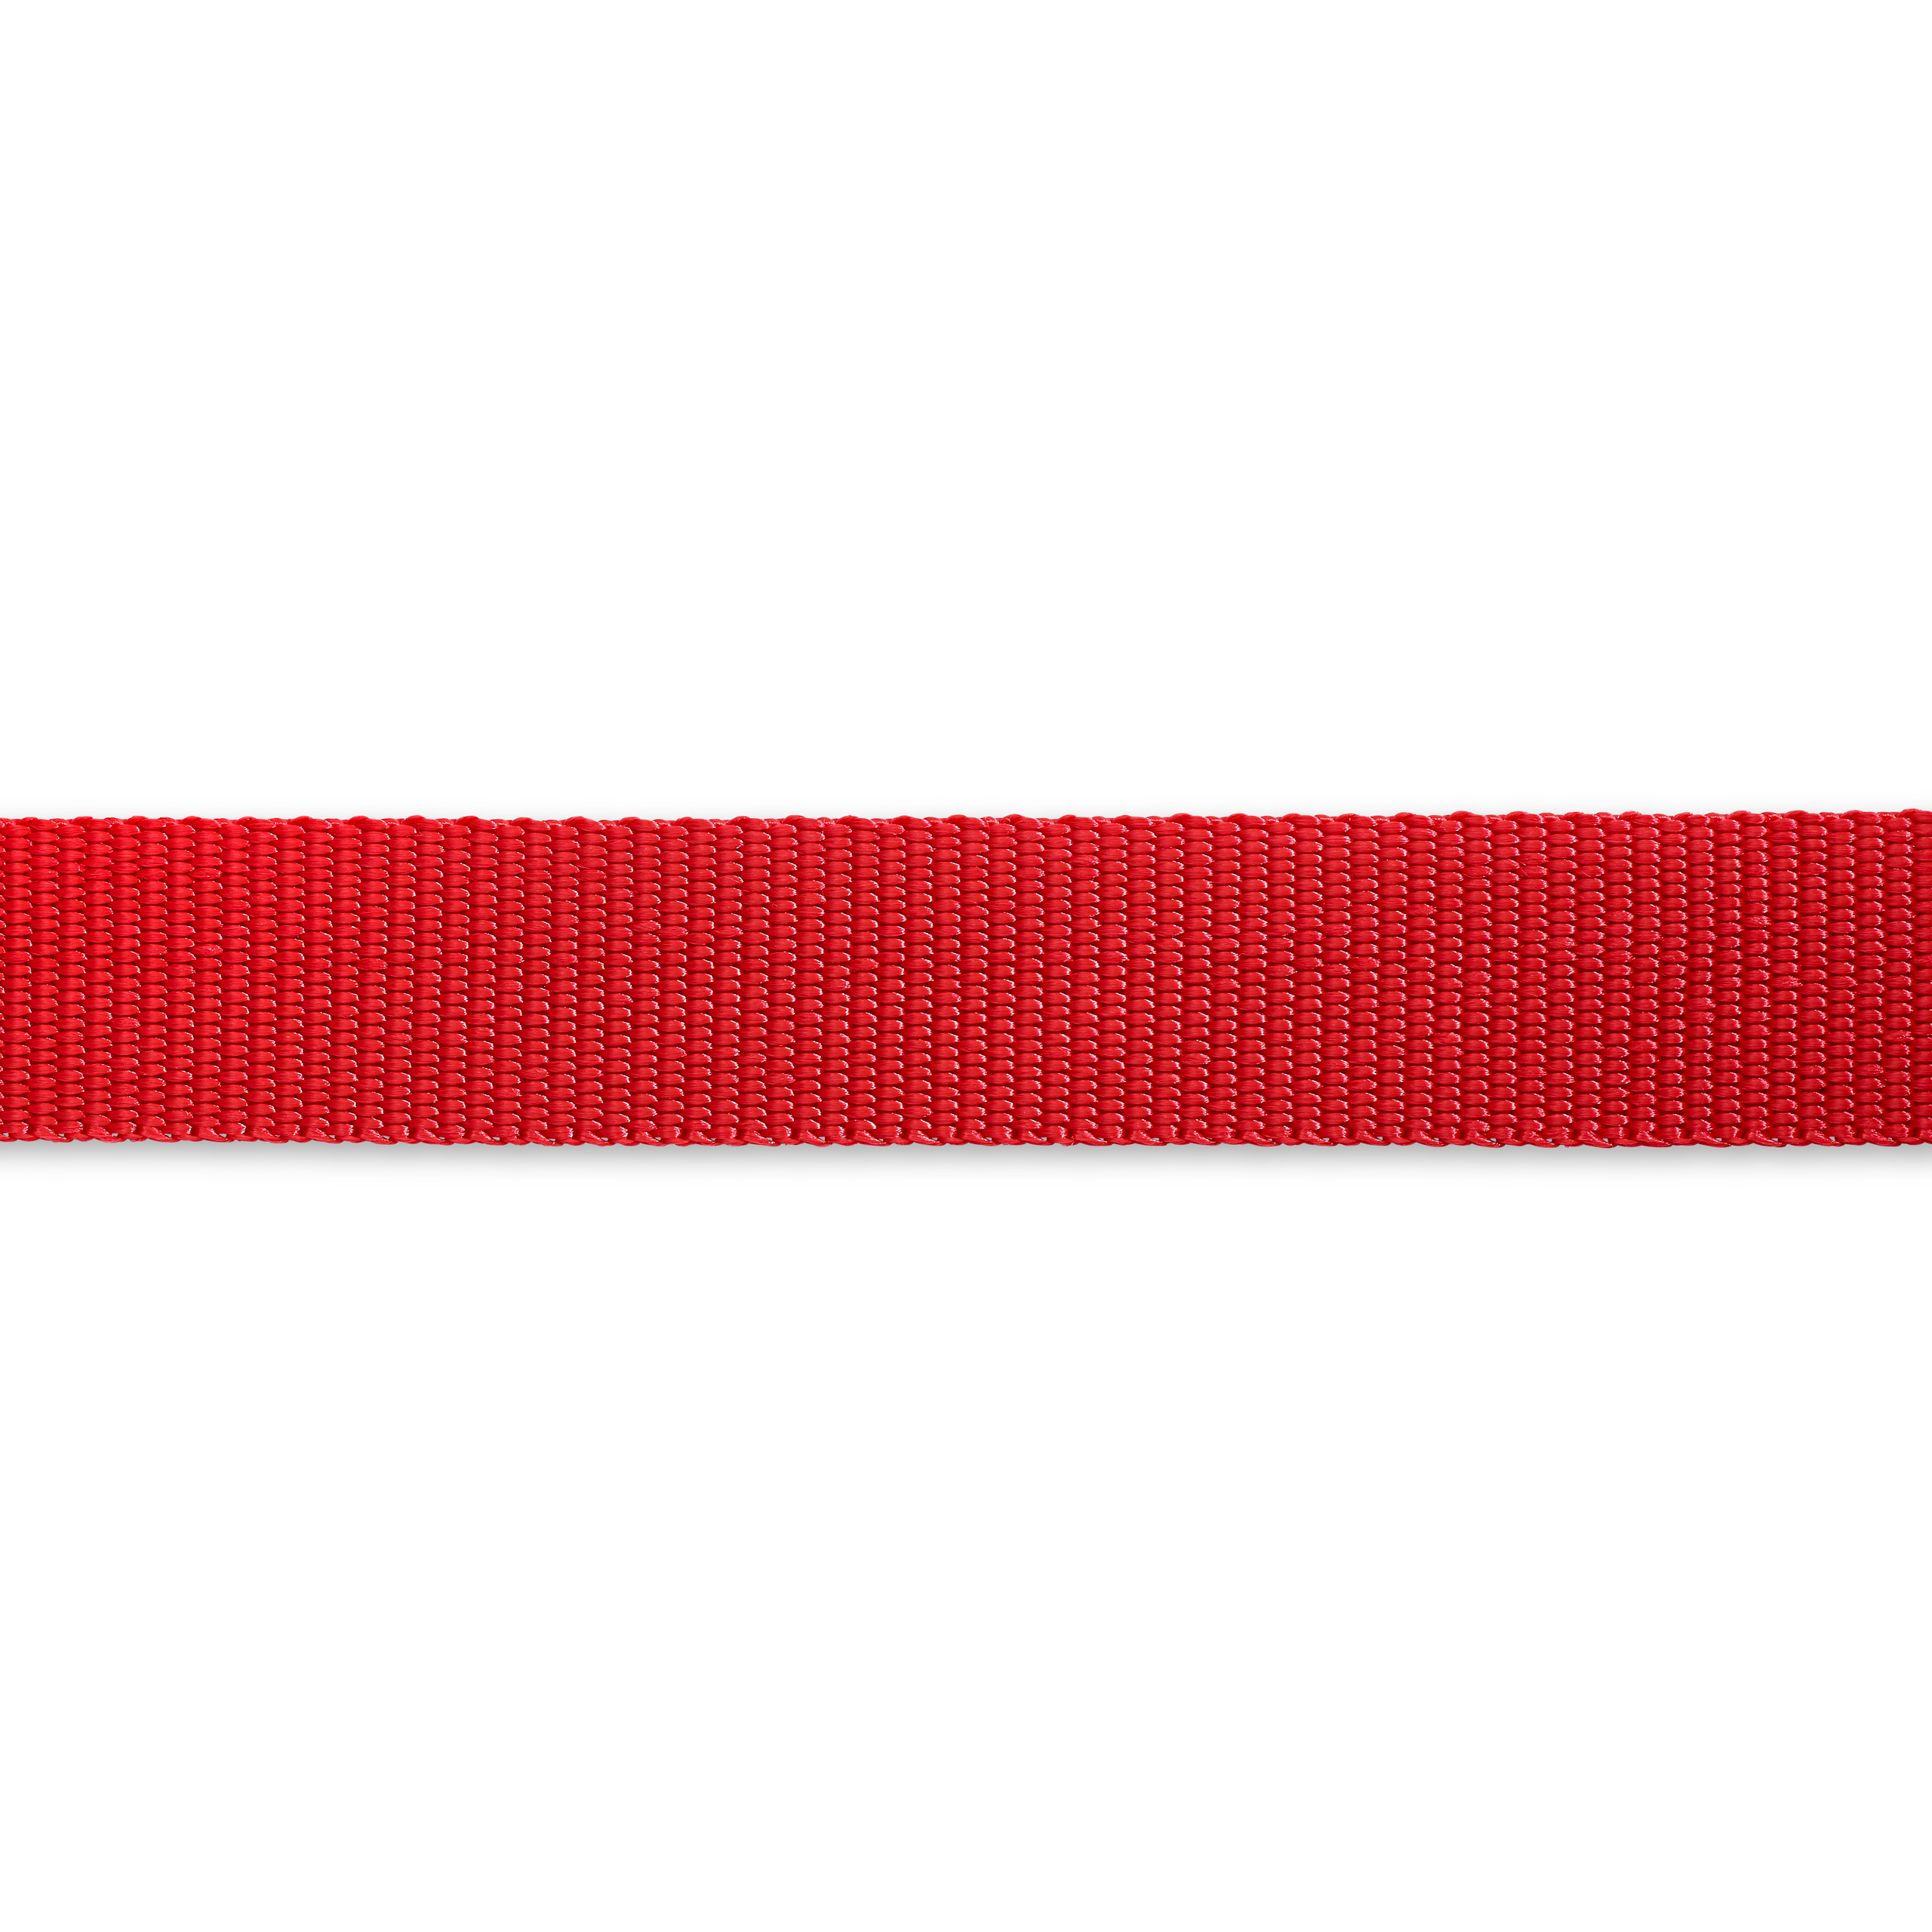 Gurtband für Rucksäcke 25 mm rot, Meterware